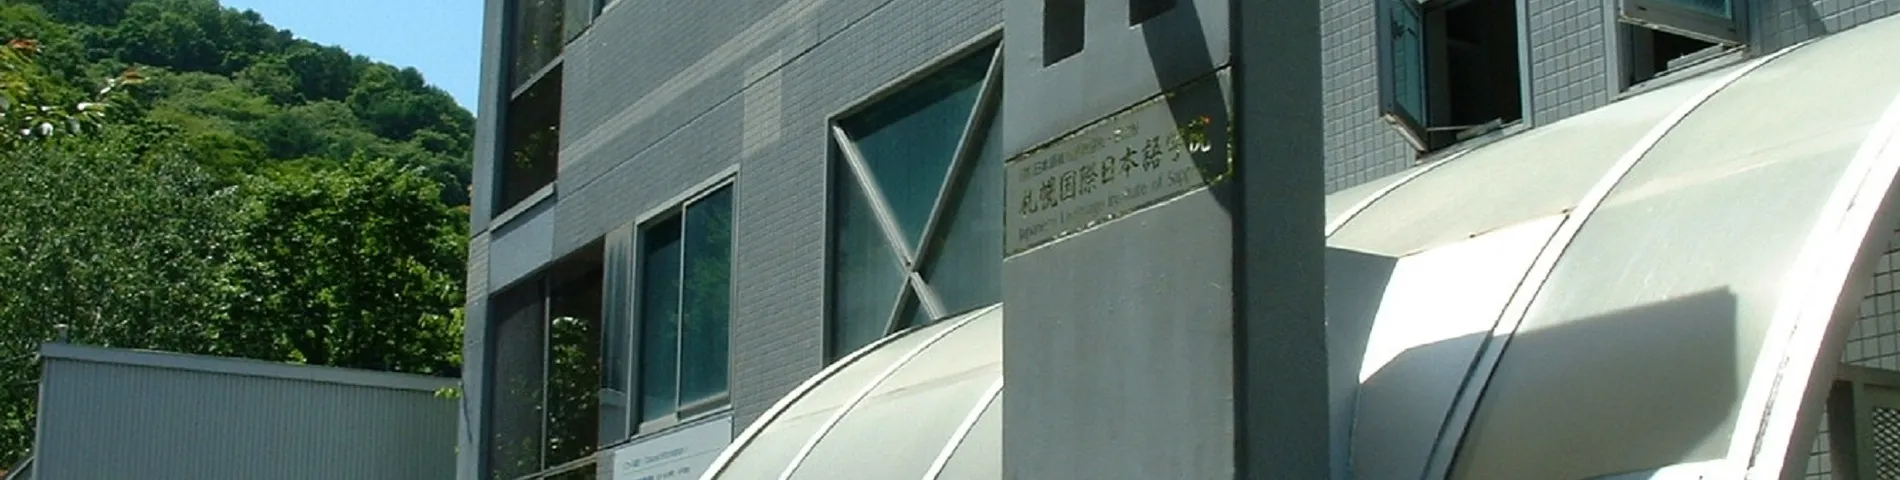 Japanese Language Institute of Sapporo bilde 1